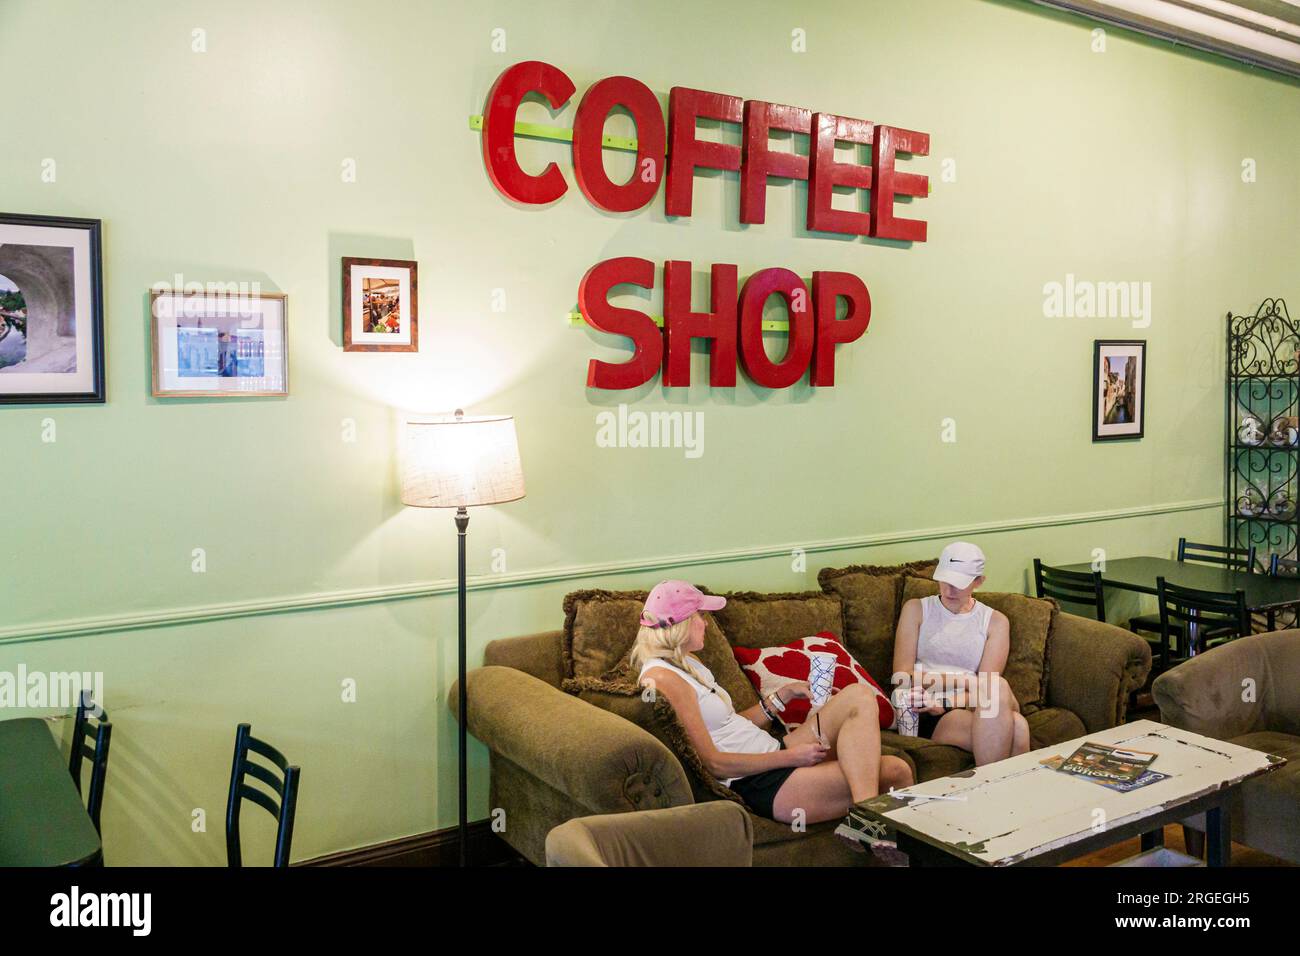 Shelby Caroline du Nord, café de café microroasted de LilyBean, signe générique de café, femme femme femme femme femme, adultes, résidents amis, intérieur indo Banque D'Images